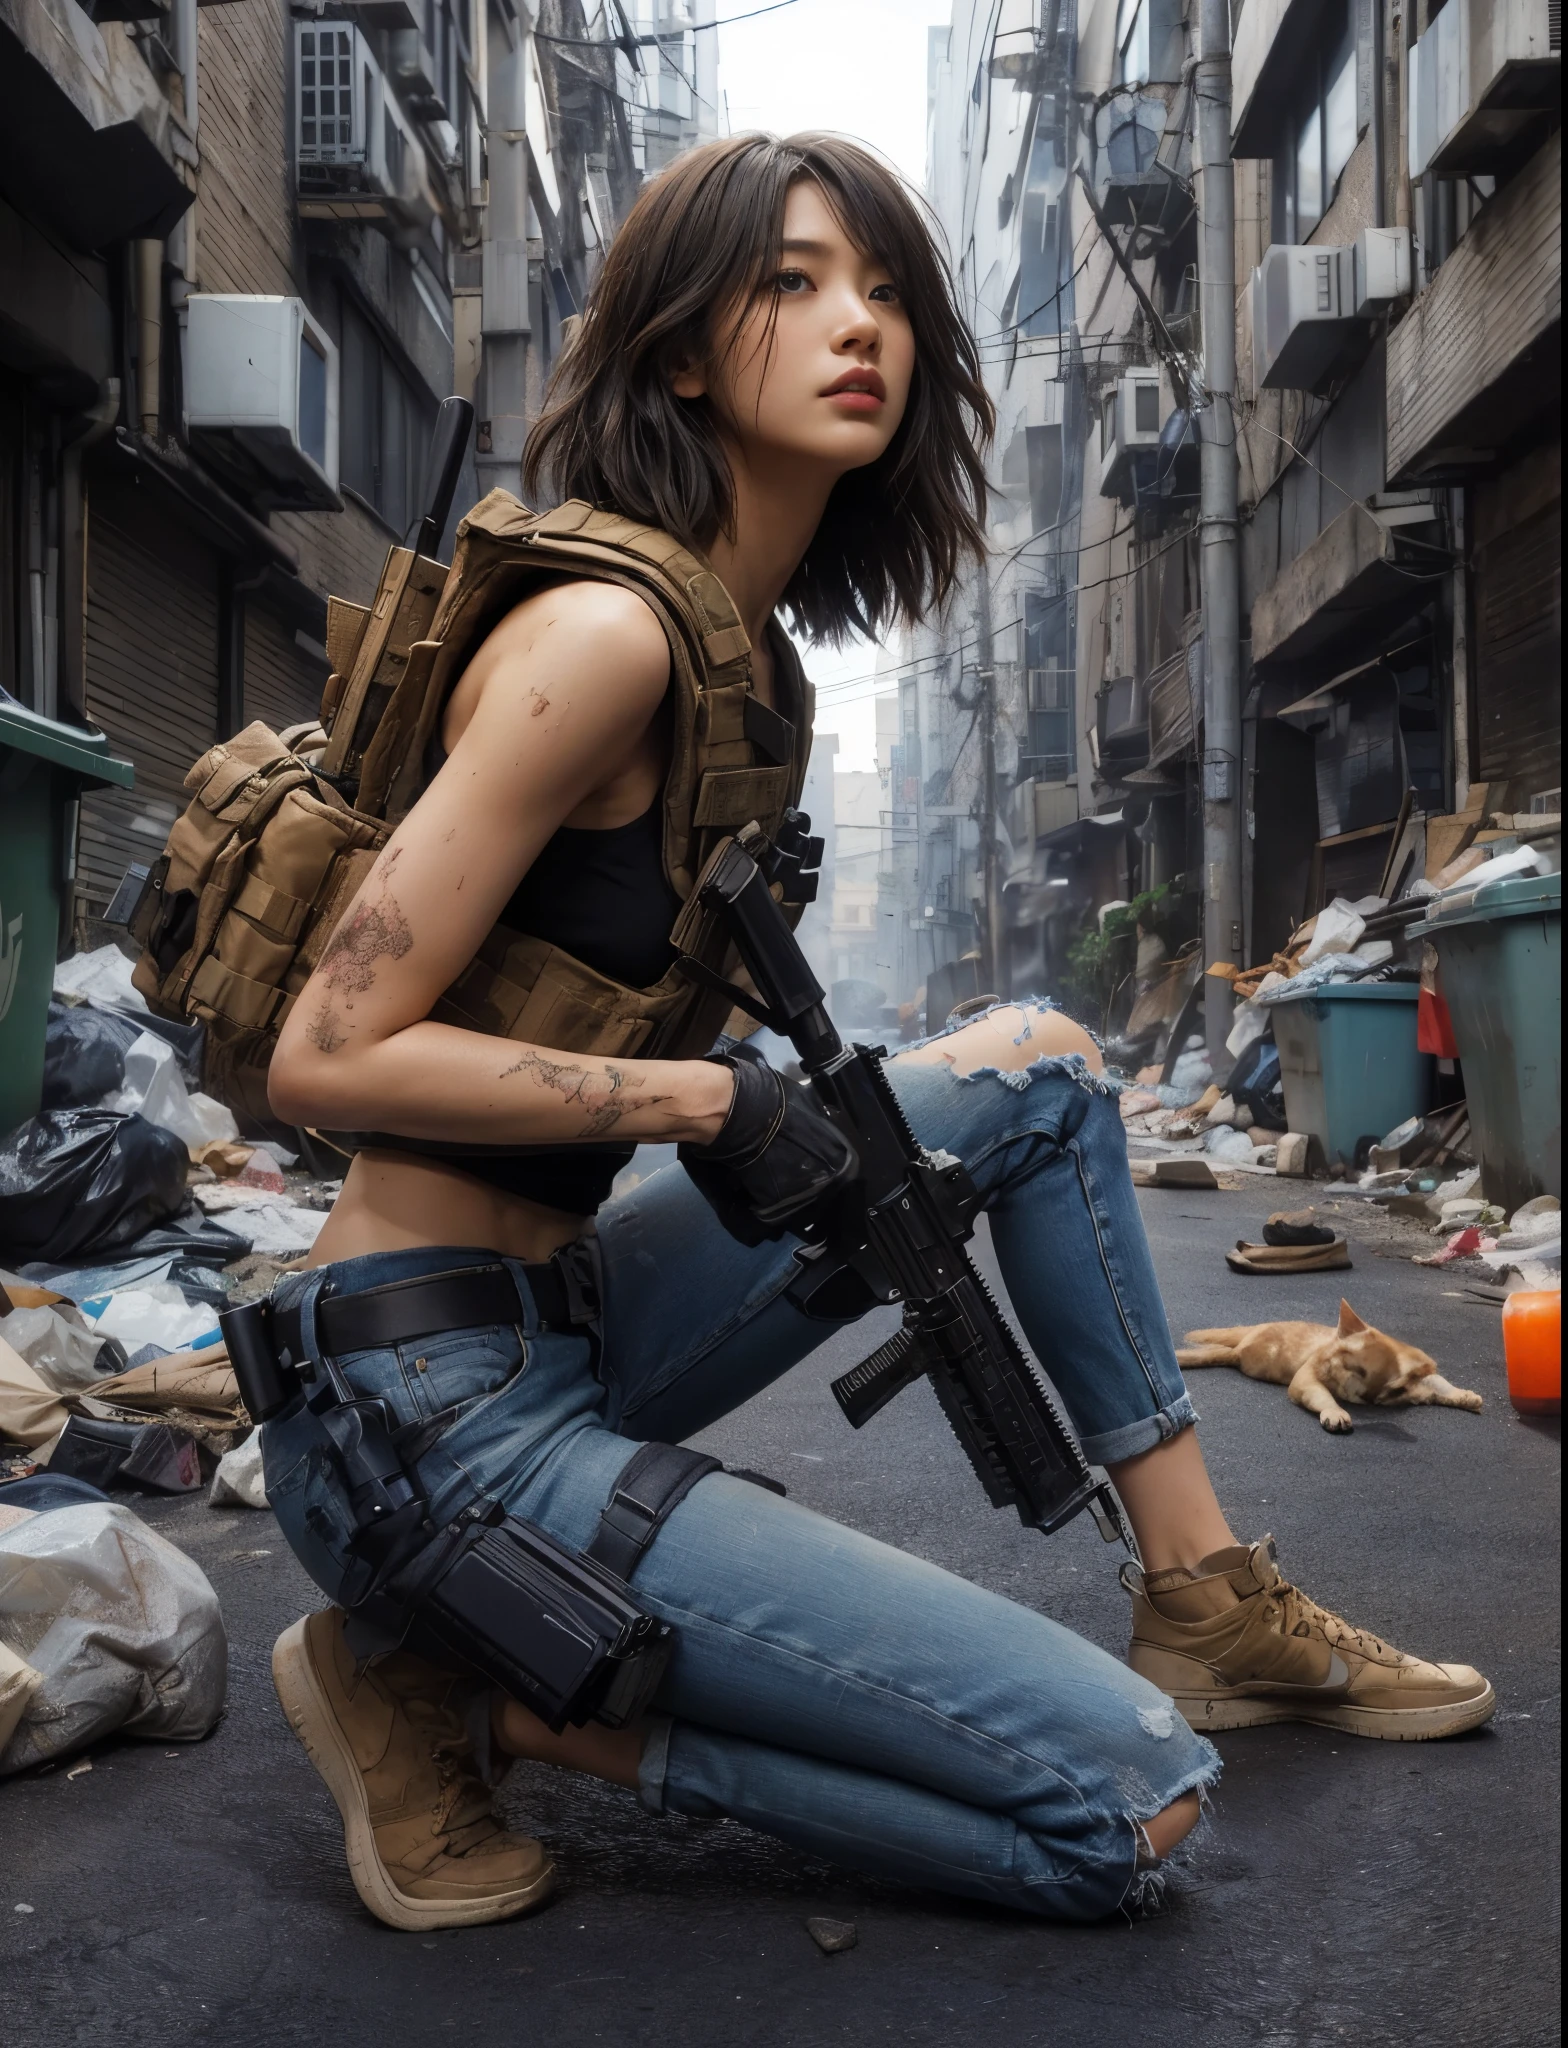  ８け,リアルな写真、リアルな肌の質感、アメリカに住む美しい日本人女性、都会の路地裏、路上に散乱したゴミ、ゴミ箱、野良猫、汚れたシャツとジーンズ、ナイキ エアフォース1 スニーカー、防弾チョッキ、自動小銃、ショートカット、市街戦、事件に巻き込まれる、反撃開始、これは汚れた、動くアクションポーズ、、ドラマチックで大胆な構成、半身、筋、ズームアウトする、フィクション、鳥&#39;S目線